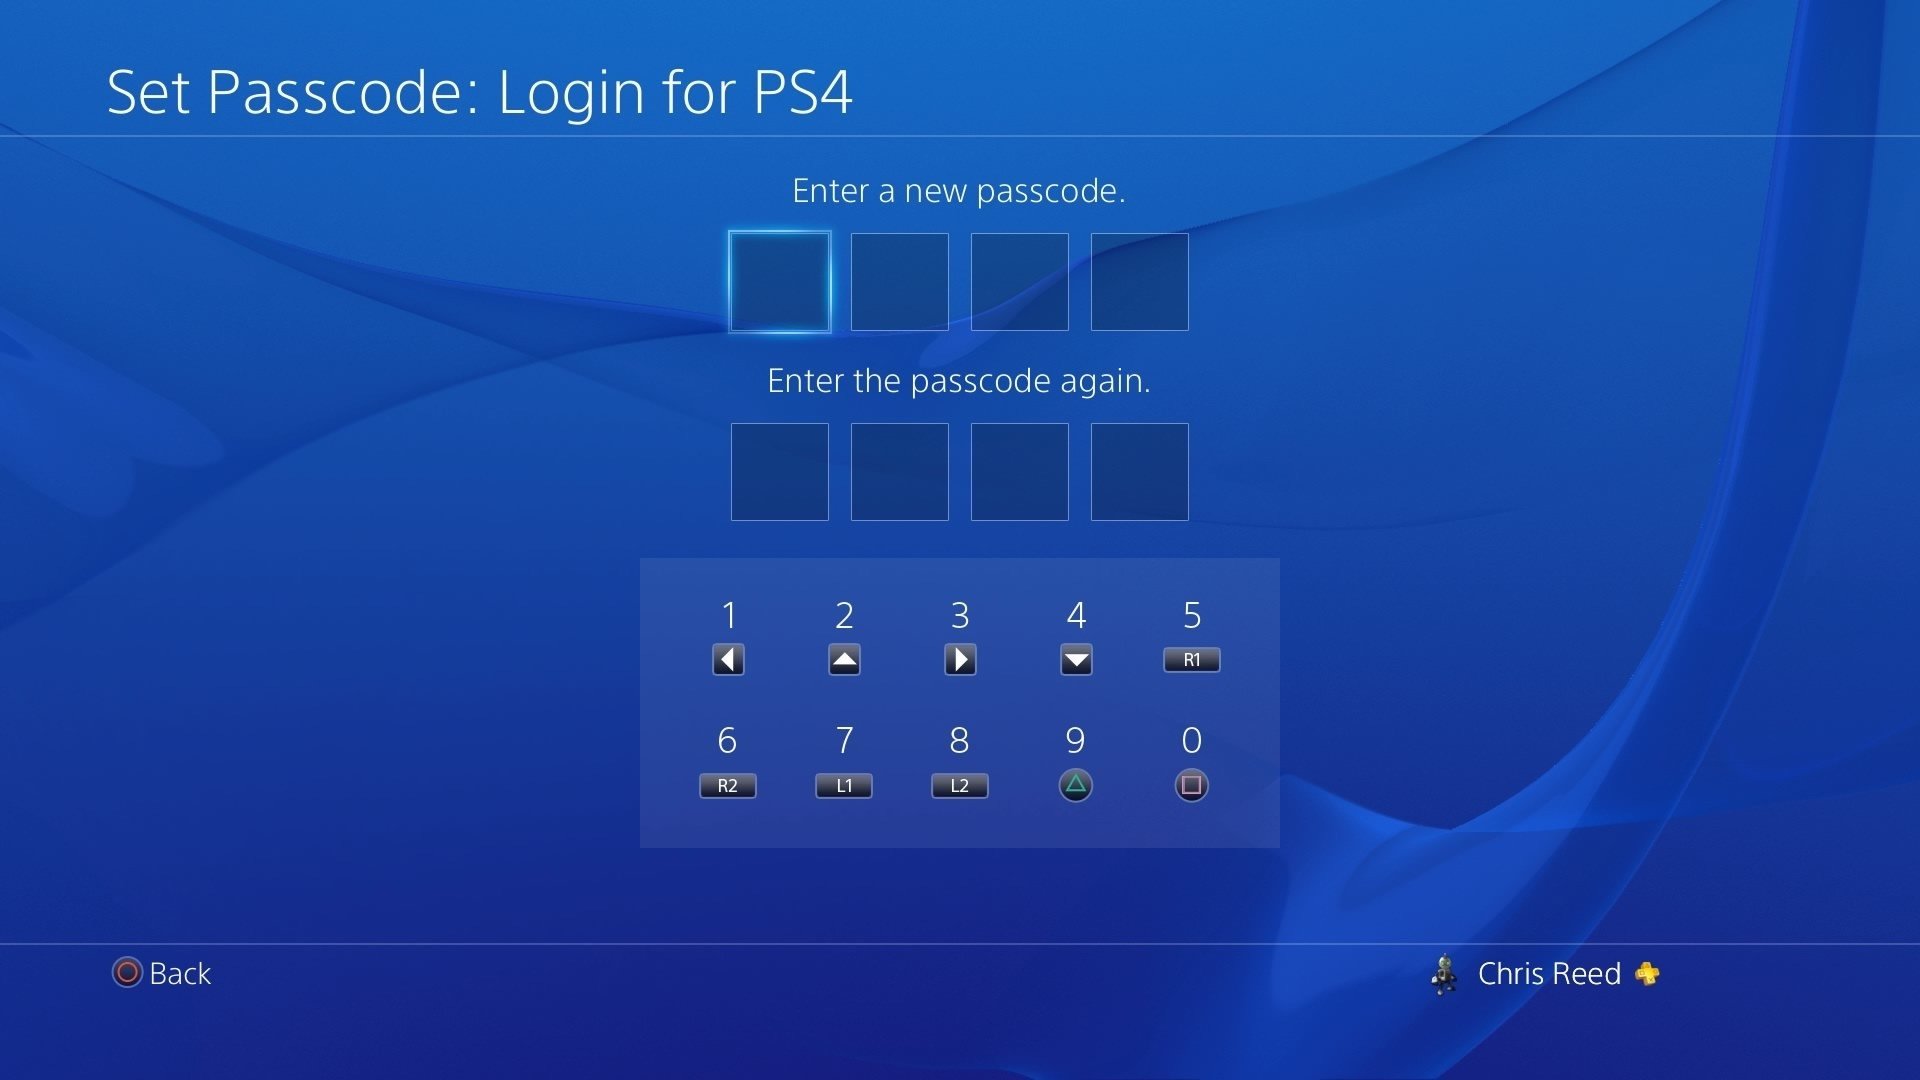 PS4 change passcode screen.